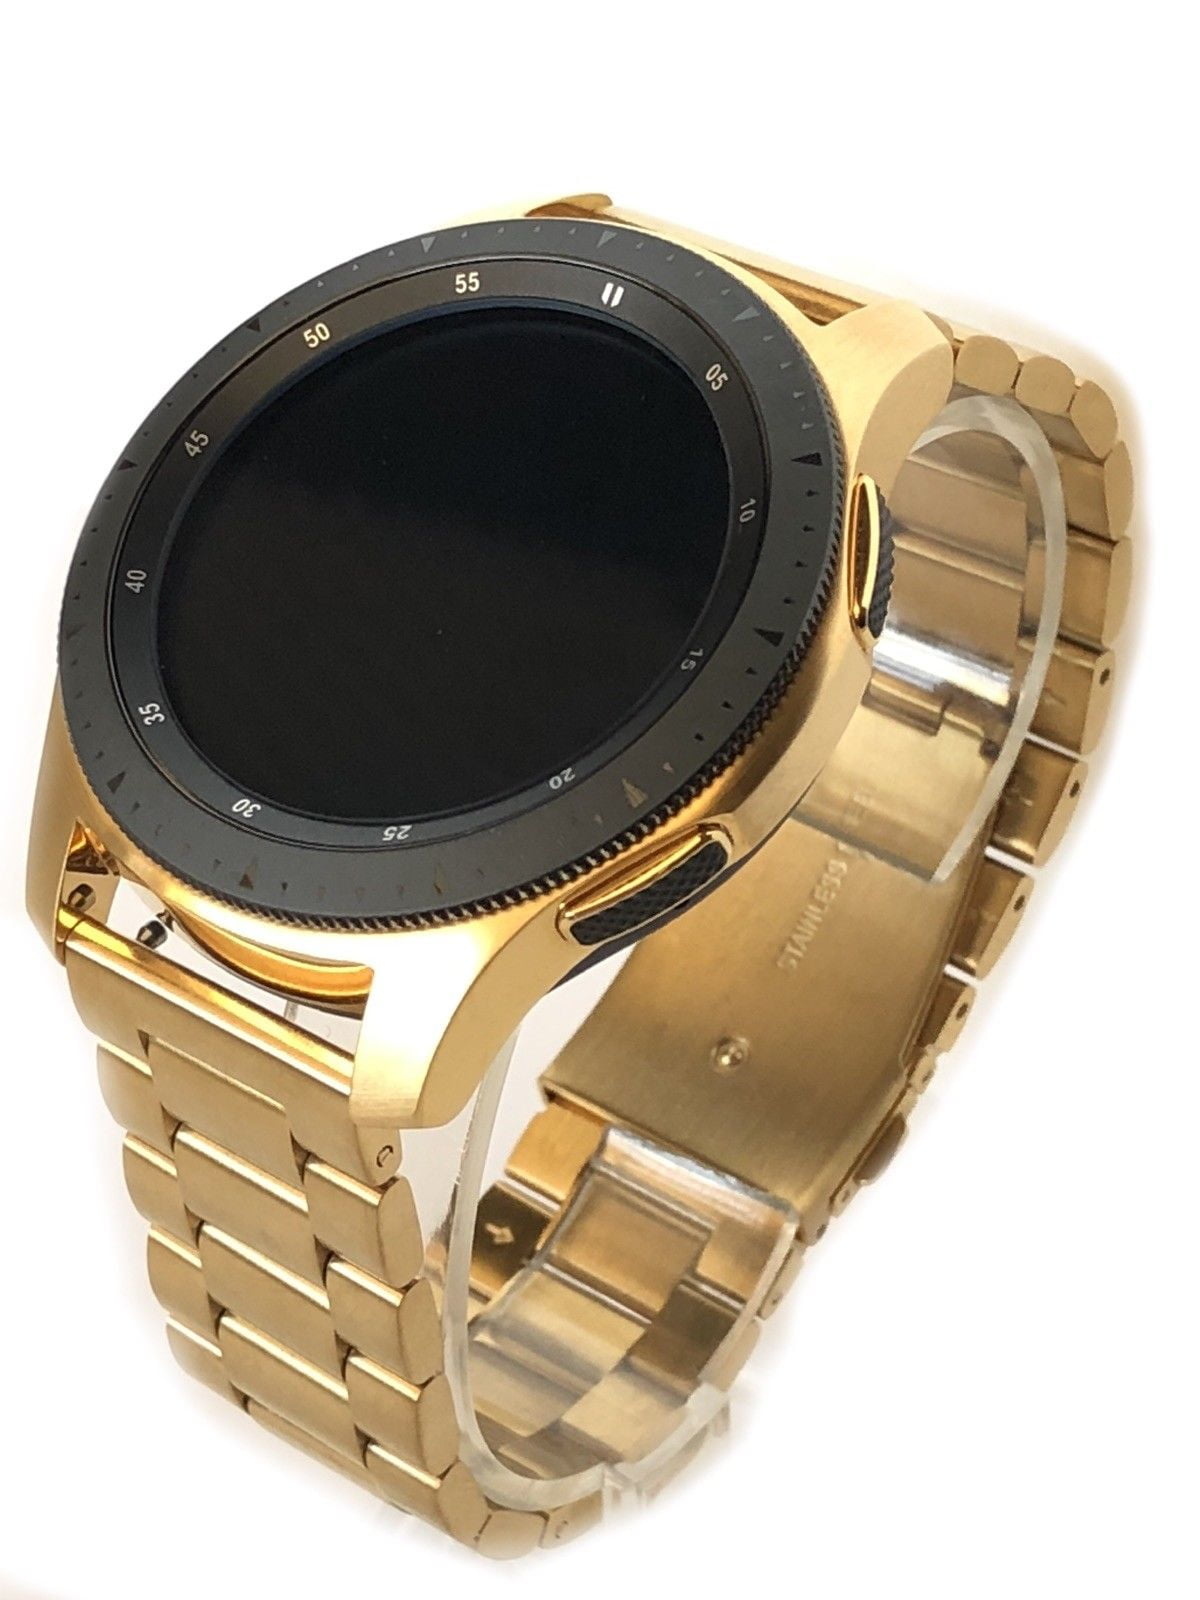 Galaxy watch gold. Samsung Galaxy watch 46mm Gold. Смарт-часы Samsung Galaxy watch 46 mm Gold. Samsung watch Gold. Samsung Galaxy watch 46mm Золотая.